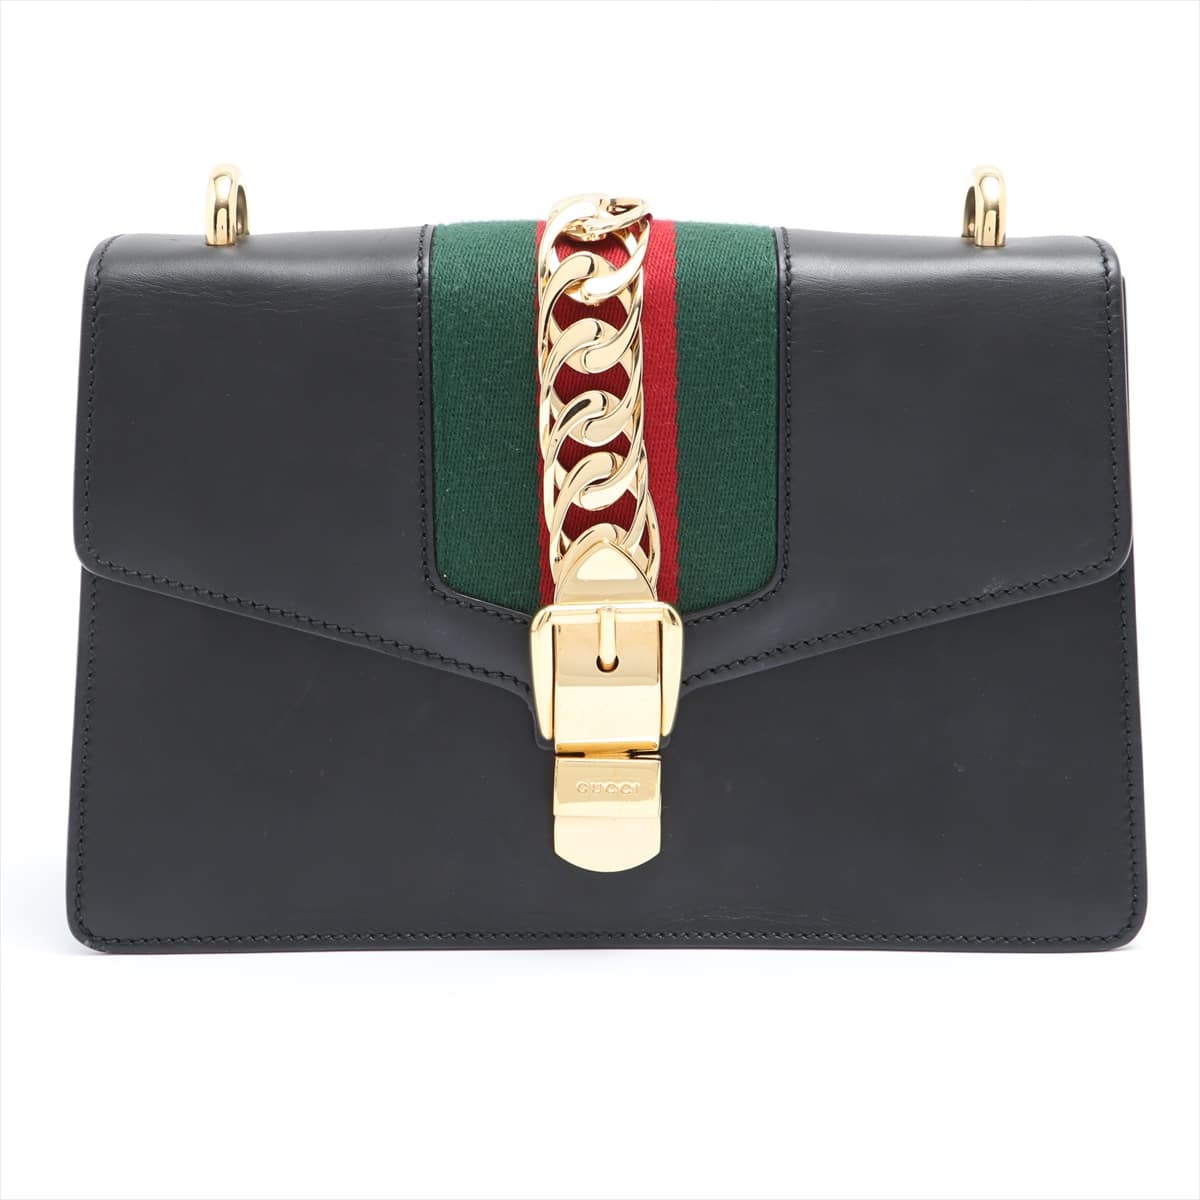 Gucci Sylvie Leather Shoulder bag Black 421882